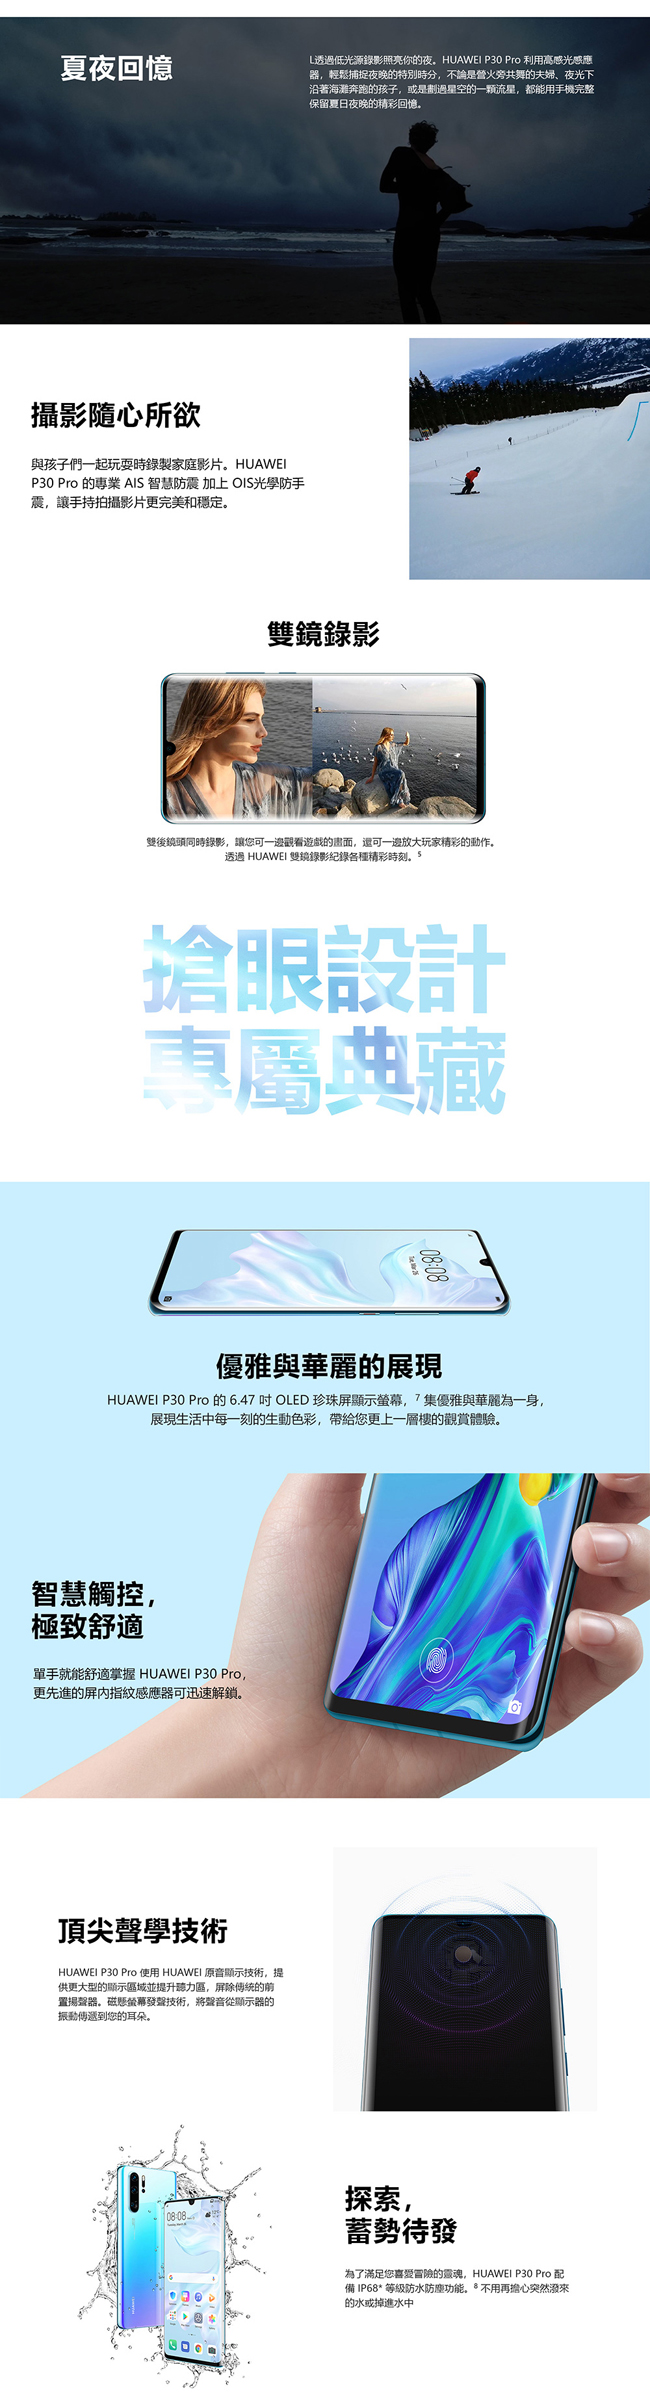 【限定促銷】HUAWEI P30 Pro (8G+512G) 智慧手機